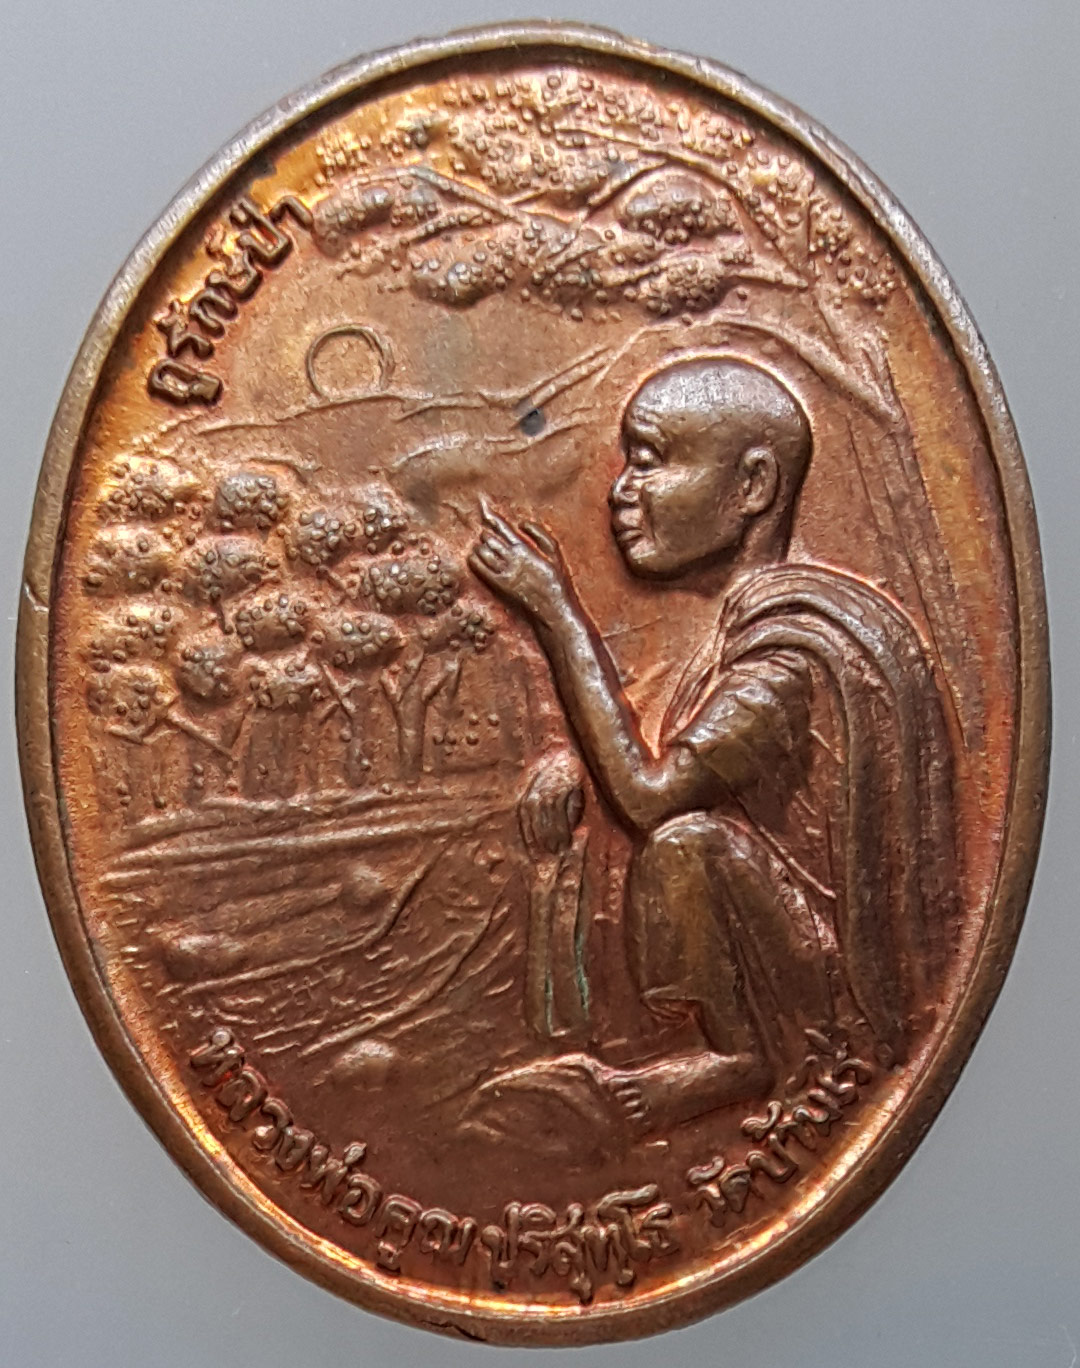 เหรียญหลวงพ่อคูณ ปริสุทโธ วัดบ้านไร่ รุ่น กูรักษ์ป่า ครบรอบการครองราชย์ 50 ปี จัดสร้างโดย ปตท ปี 2539